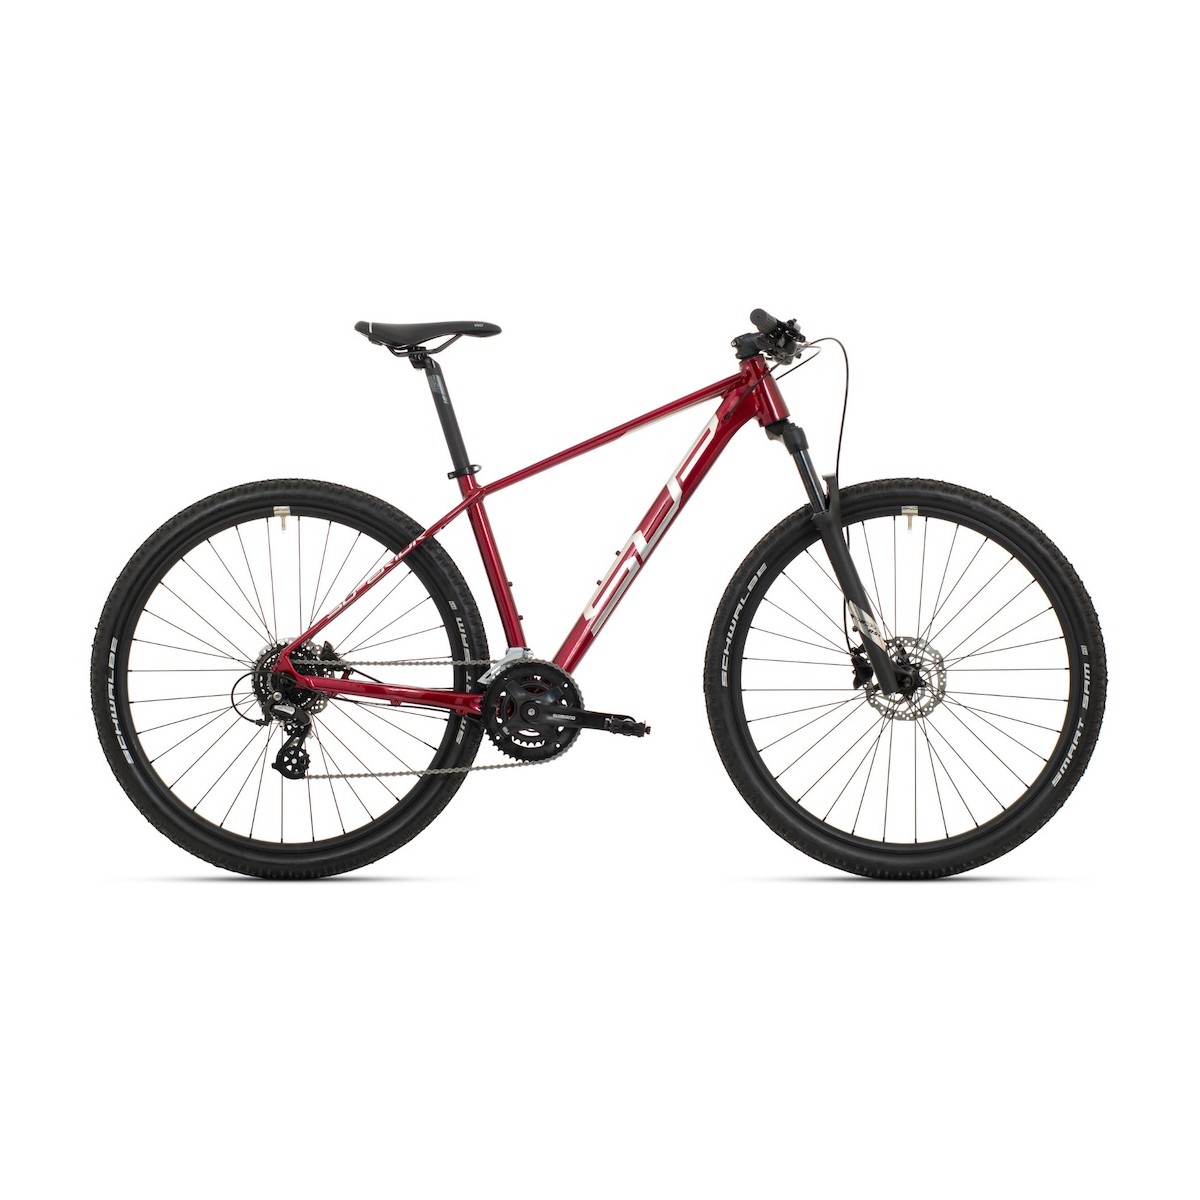 SUPERIOR XC 819 29 mountain bike - dark red/silver - 2022